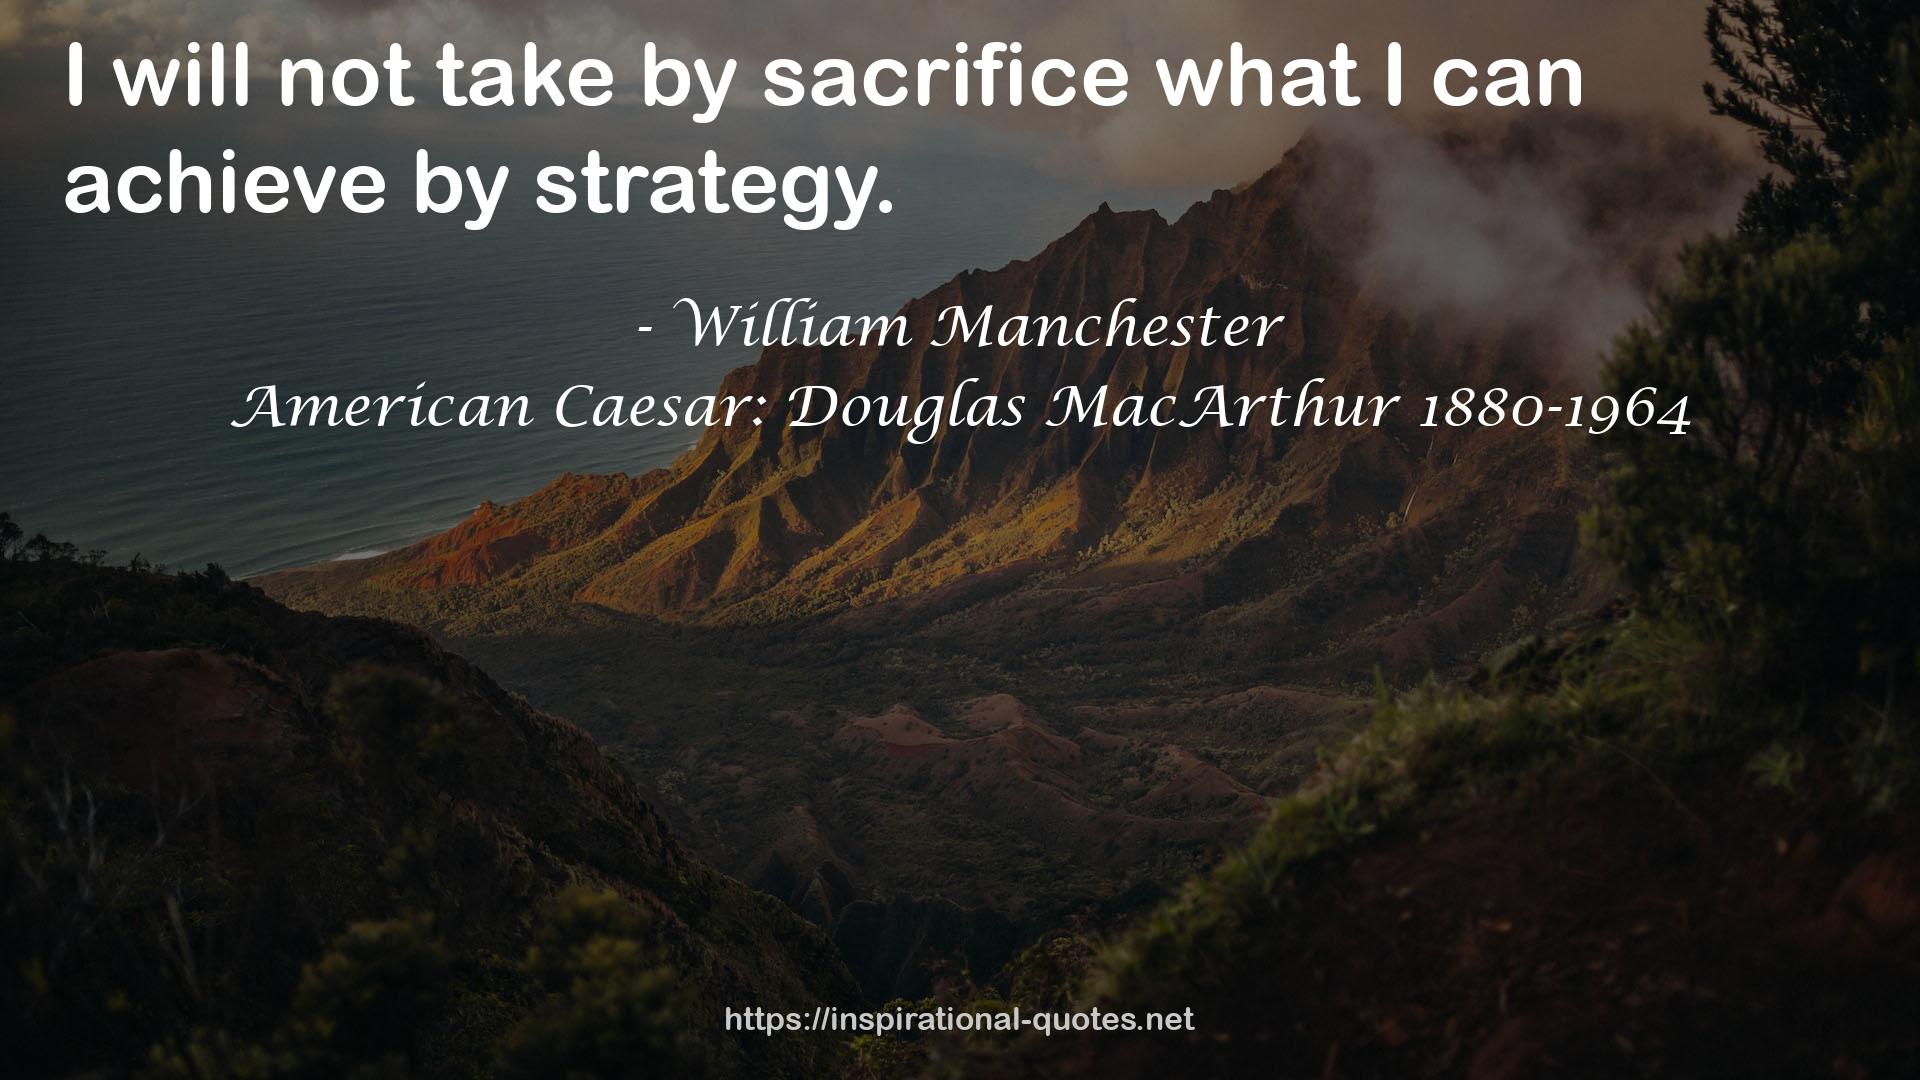 American Caesar: Douglas MacArthur 1880-1964 QUOTES